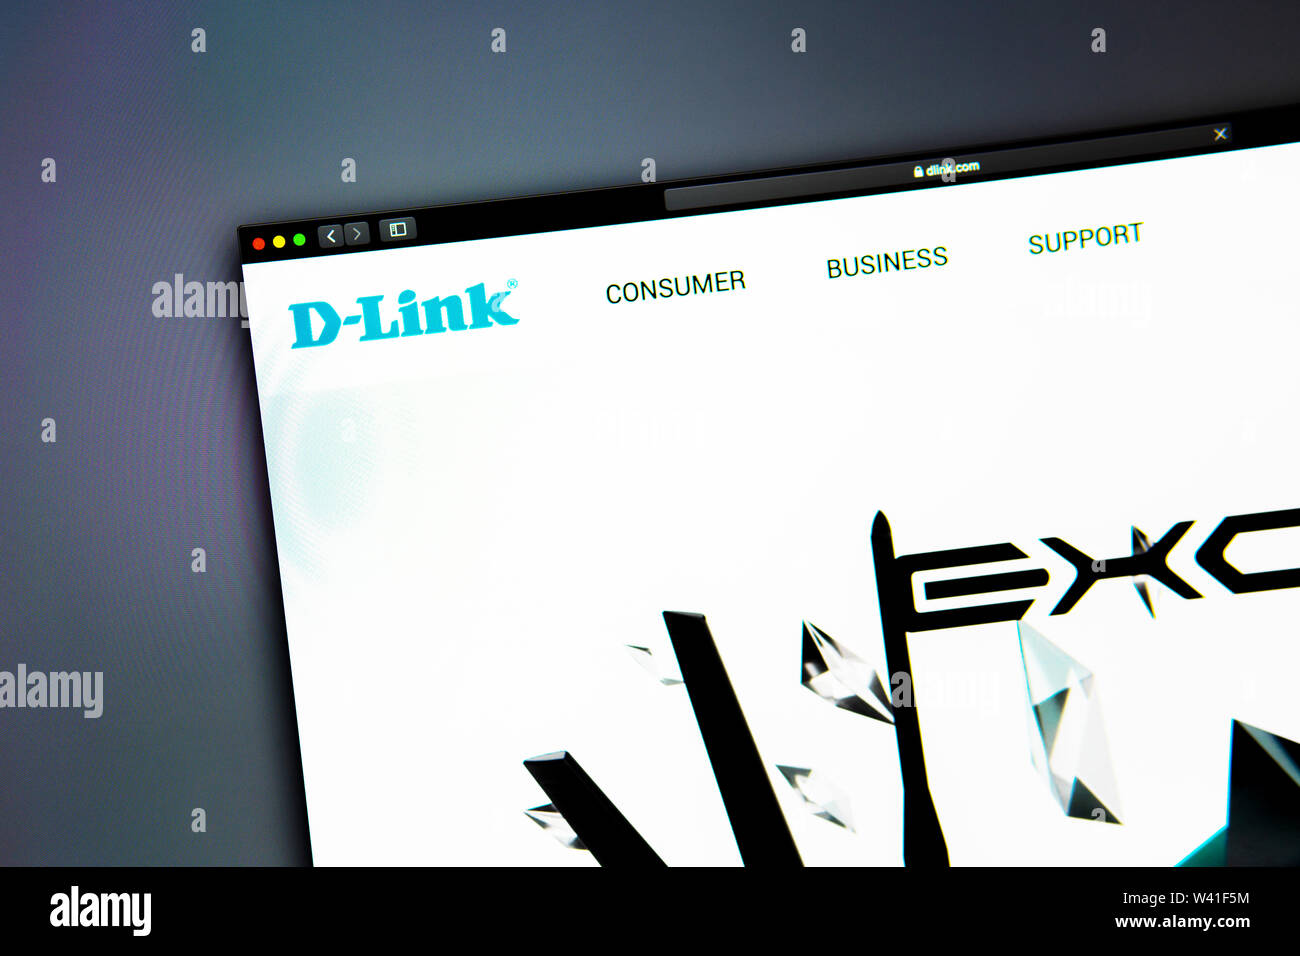 D-Link Startseite. Nahaufnahme von DLink Logo. Kann als illustrative für Medien, Marketing oder Business Konzept verwendet werden. Stockfoto